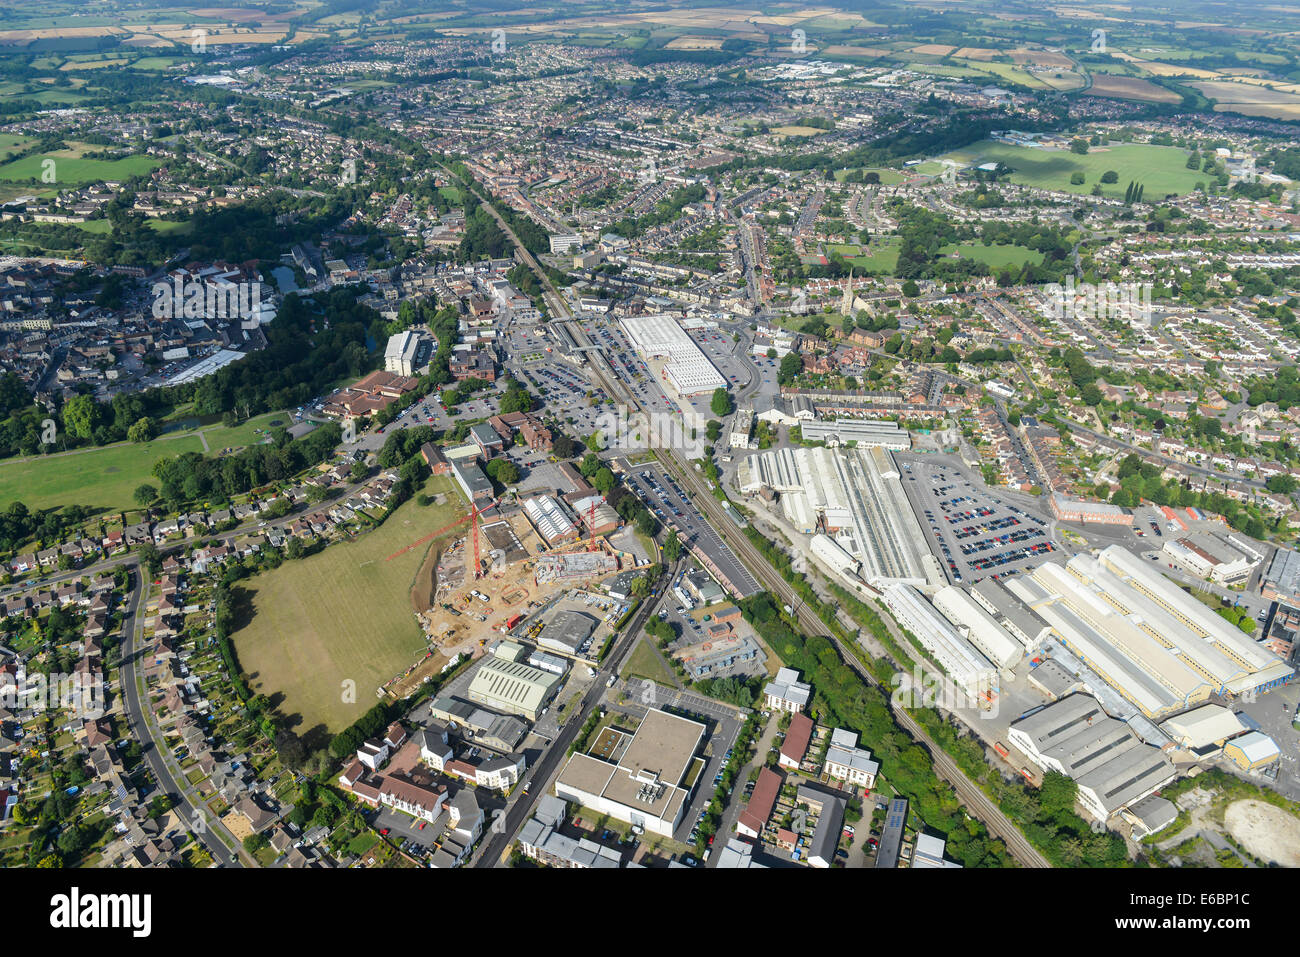 Eine Luftaufnahme zeigt die Stadt von Chippenham in Wiltshire, Großbritannien Stockfoto